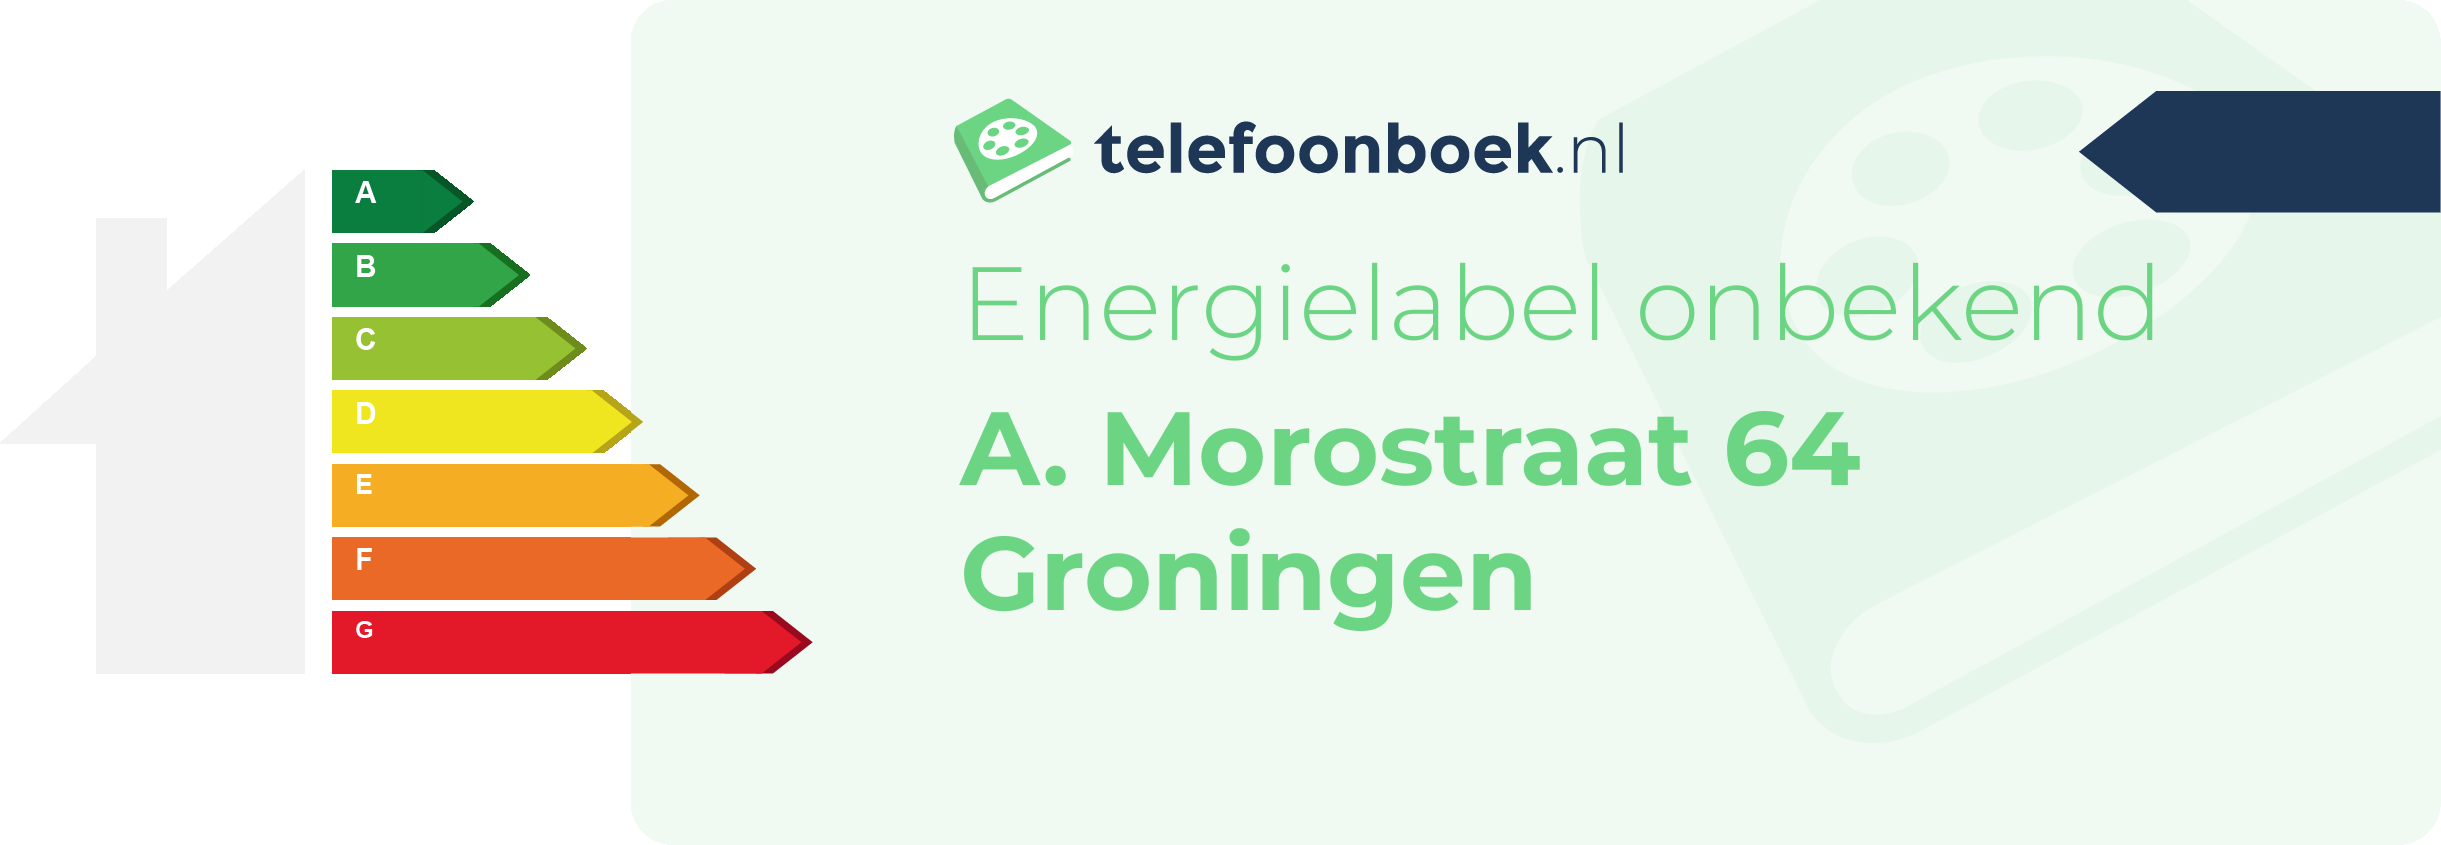 Energielabel A. Morostraat 64 Groningen